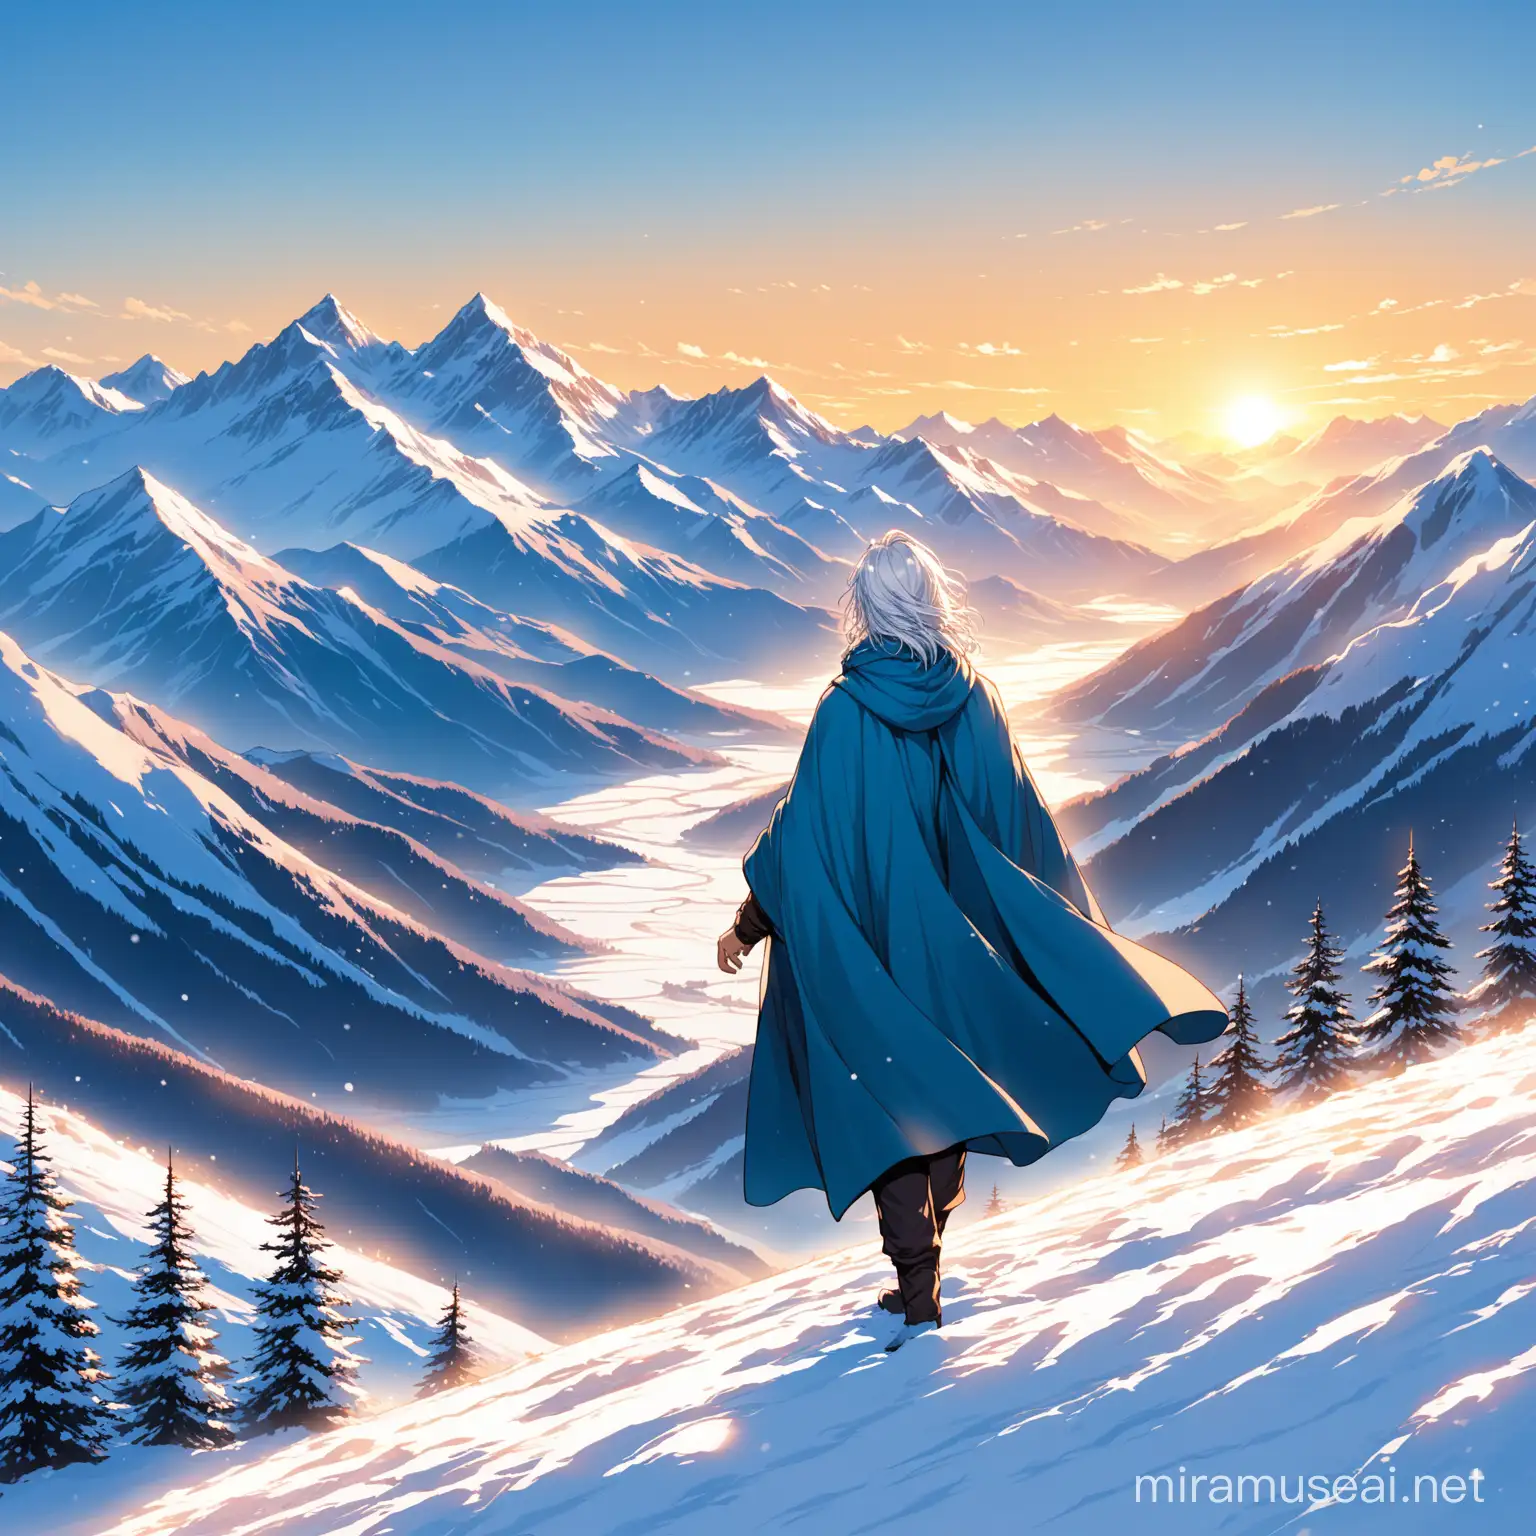 eine große Gebirgskette, sonnenaufgang, winter, schneebedeckte Berge, ein junge mit langen silbernen haaren und blauen Augen wandert durch die Berge, magier, blauer umhang, winterklamotten